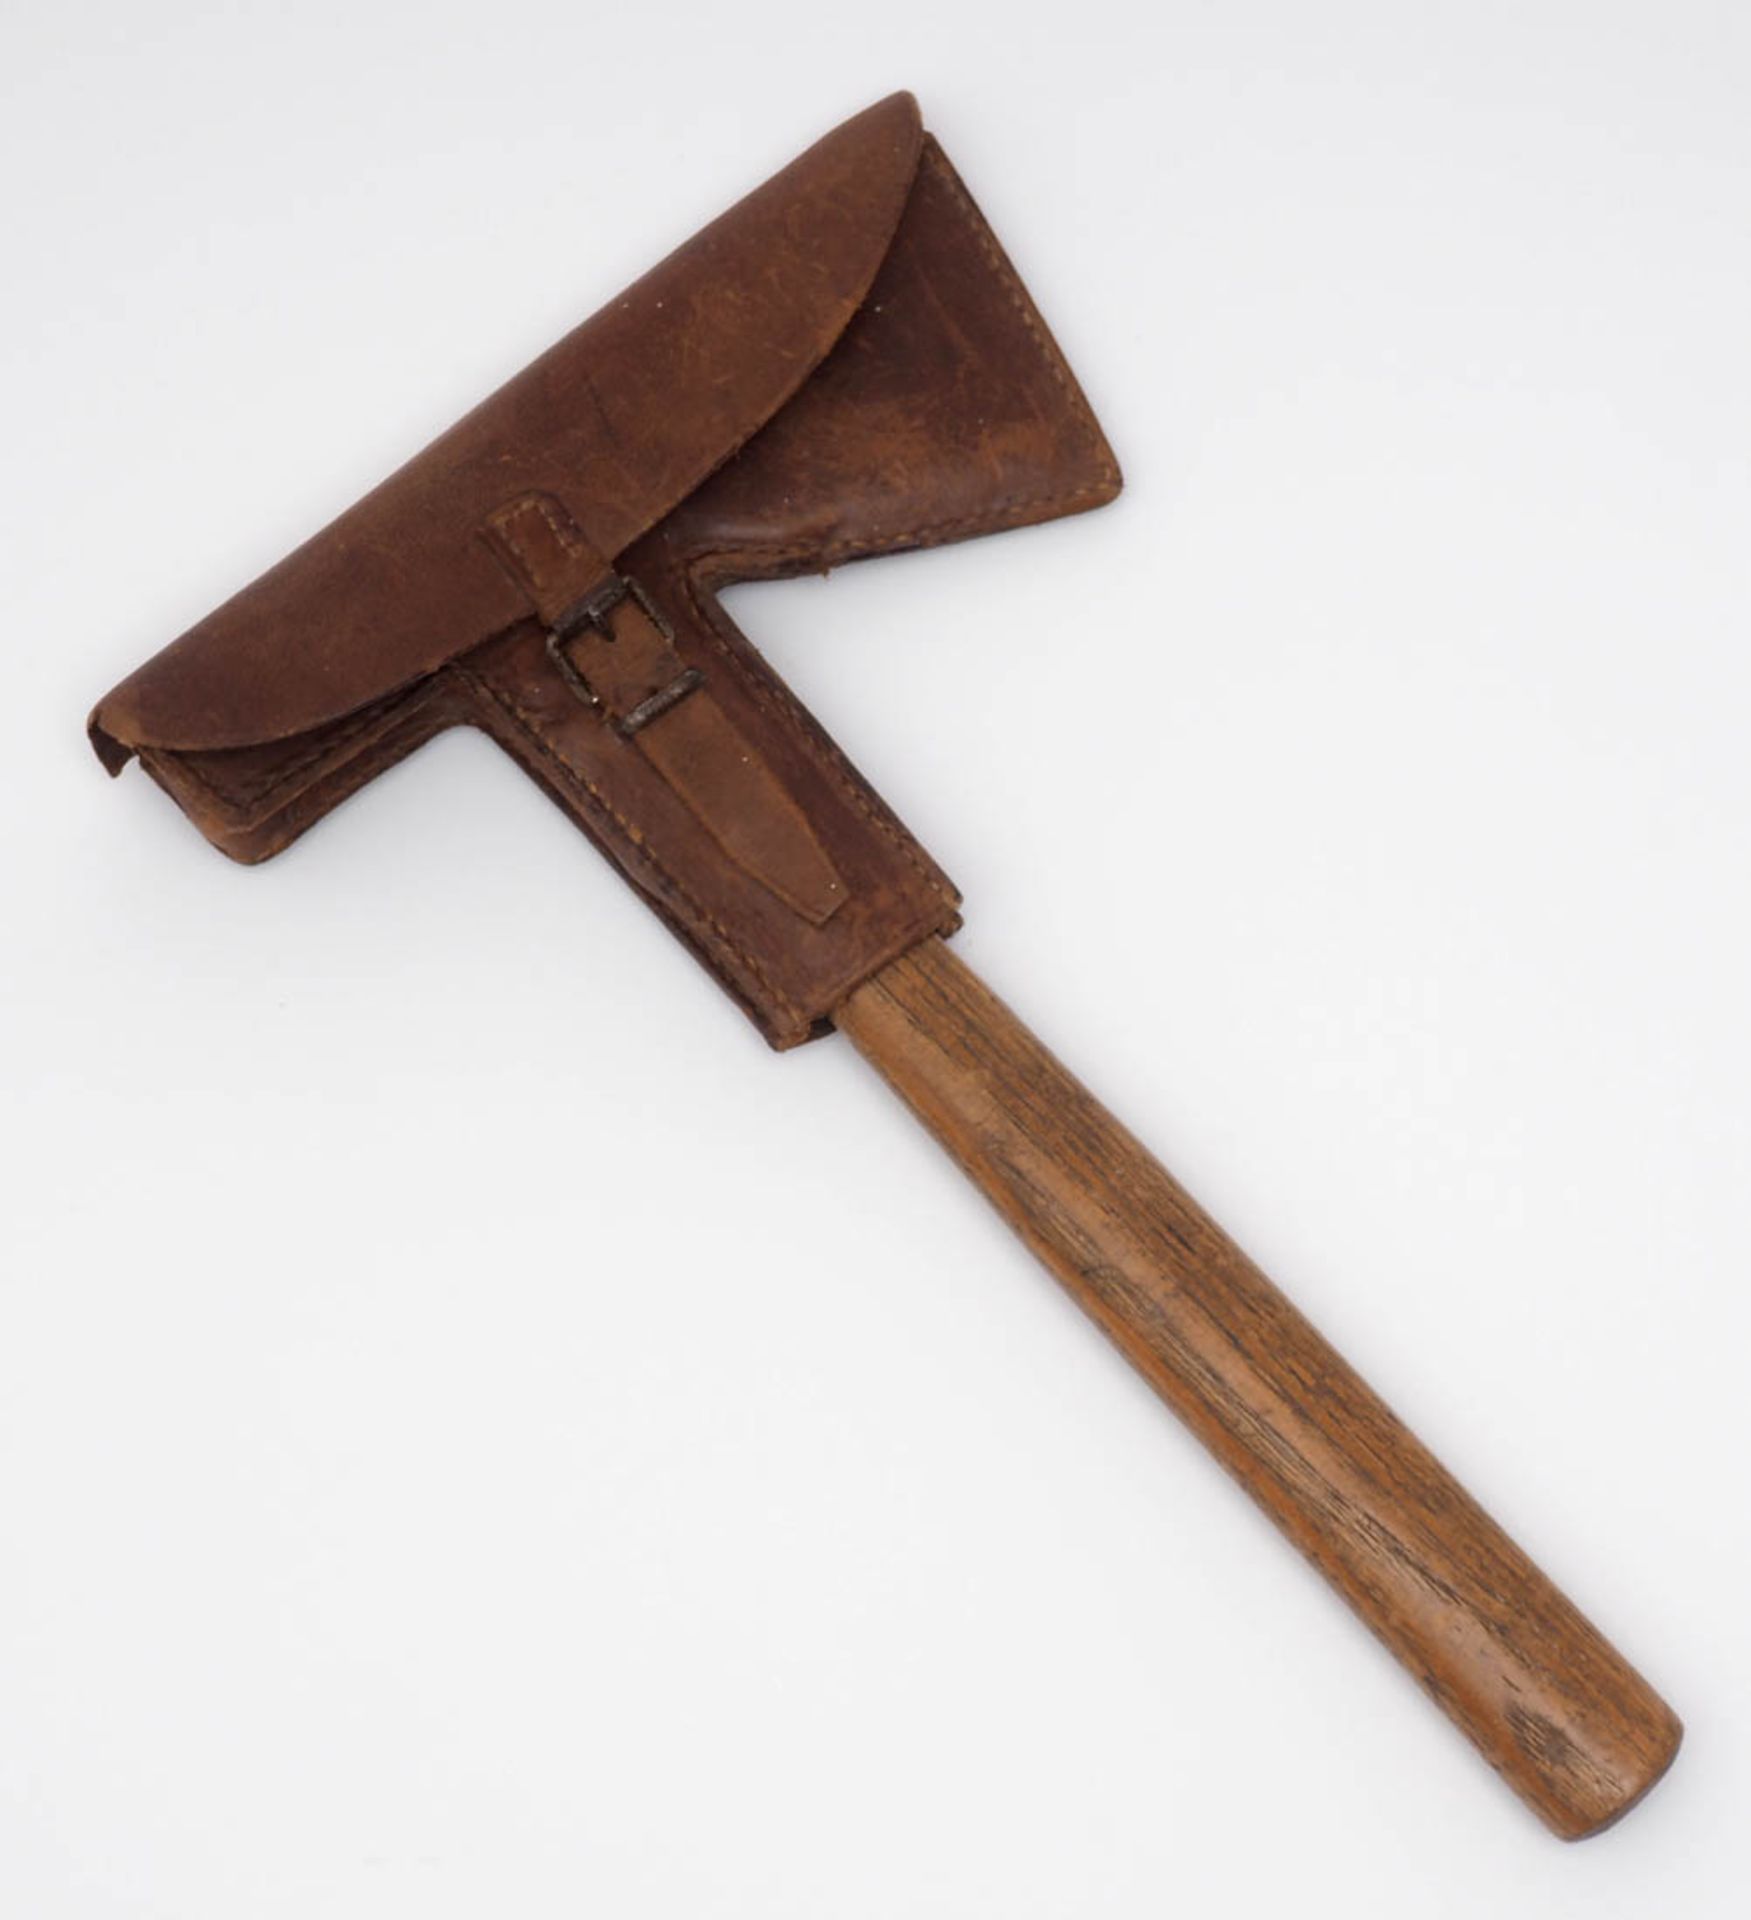 Feuerwehr-Axt, 50er Jahre Eisen, mit Holzgriff. Originale Lederhülle. L.36,5cm. - Bild 4 aus 4